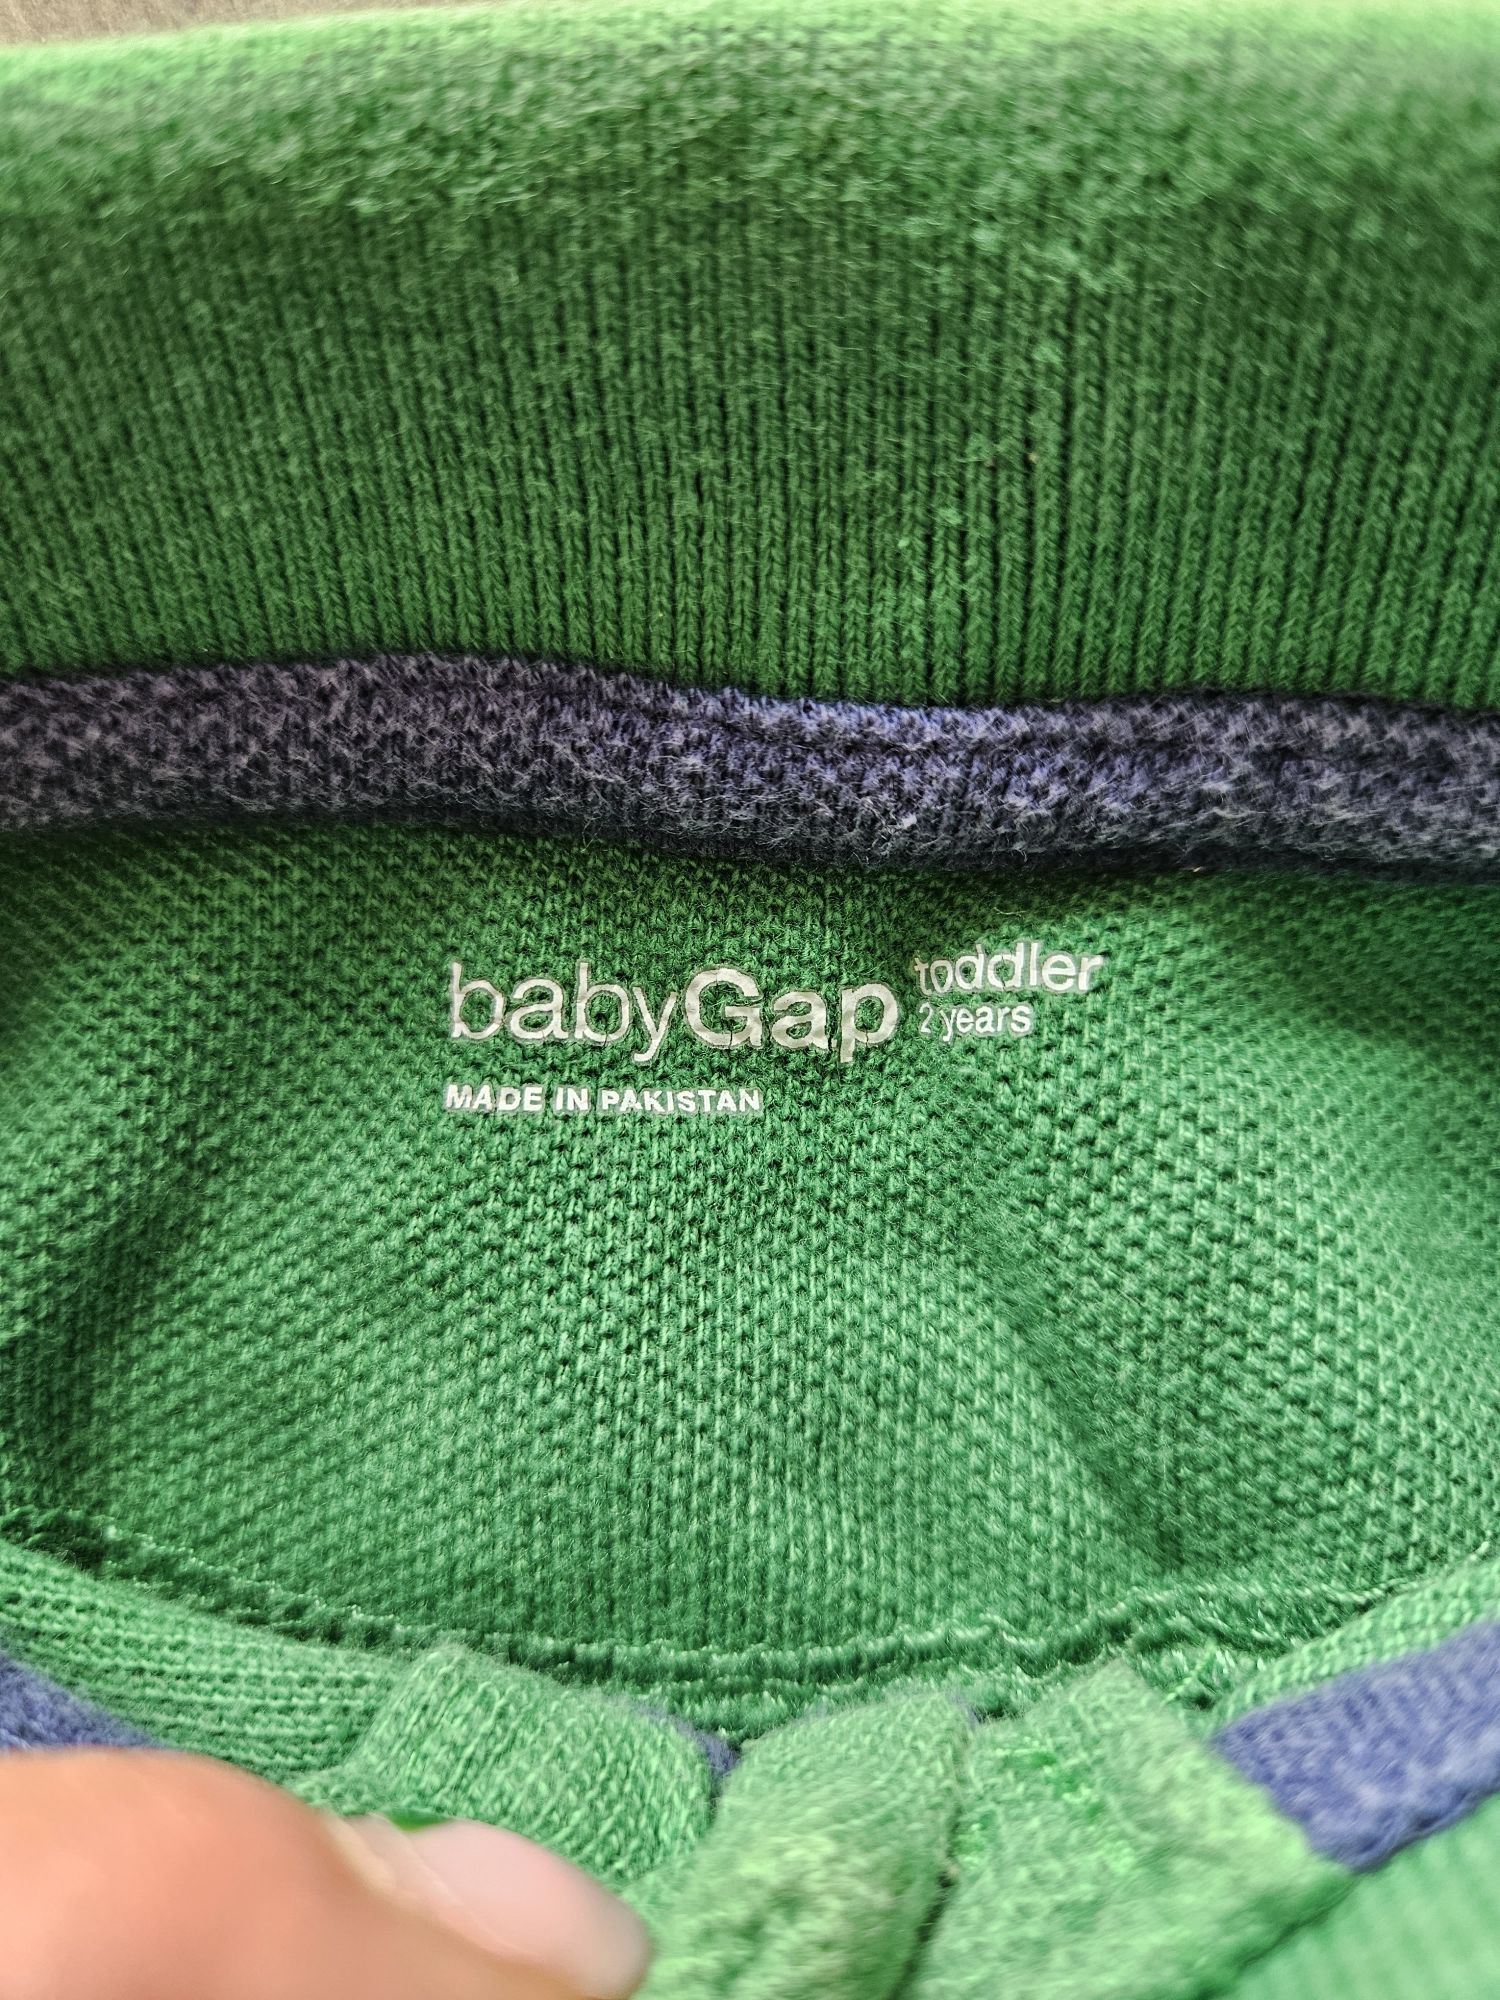 Chłopięcy t-shirt Polo BabyGap. Rozmiar na 2 latka